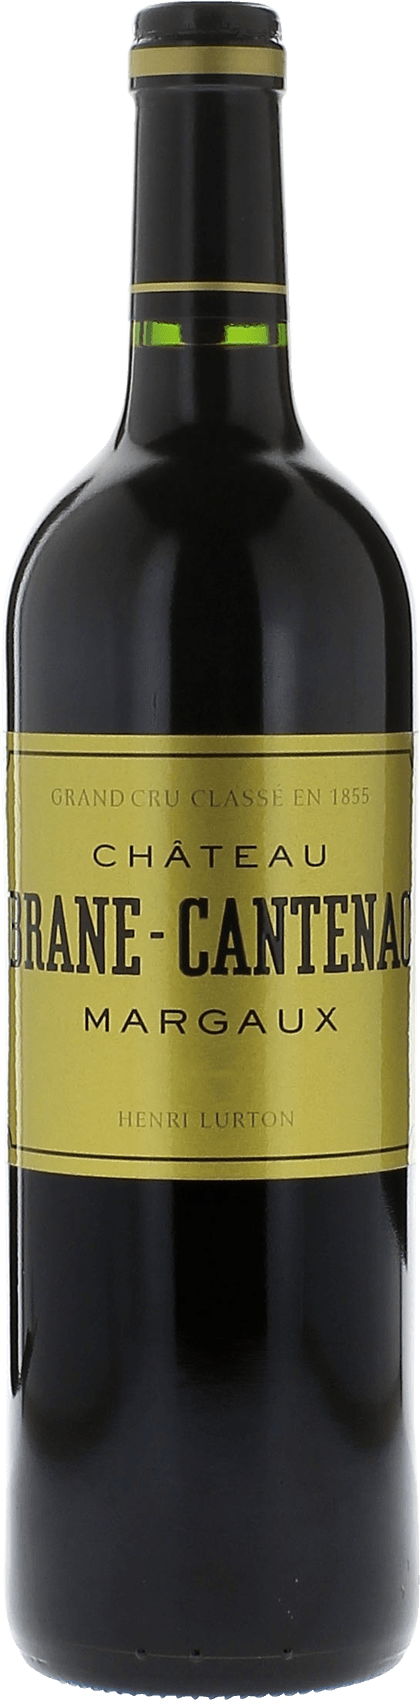 Brane cantenac 1986 2me Grand cru class Margaux, Bordeaux rouge